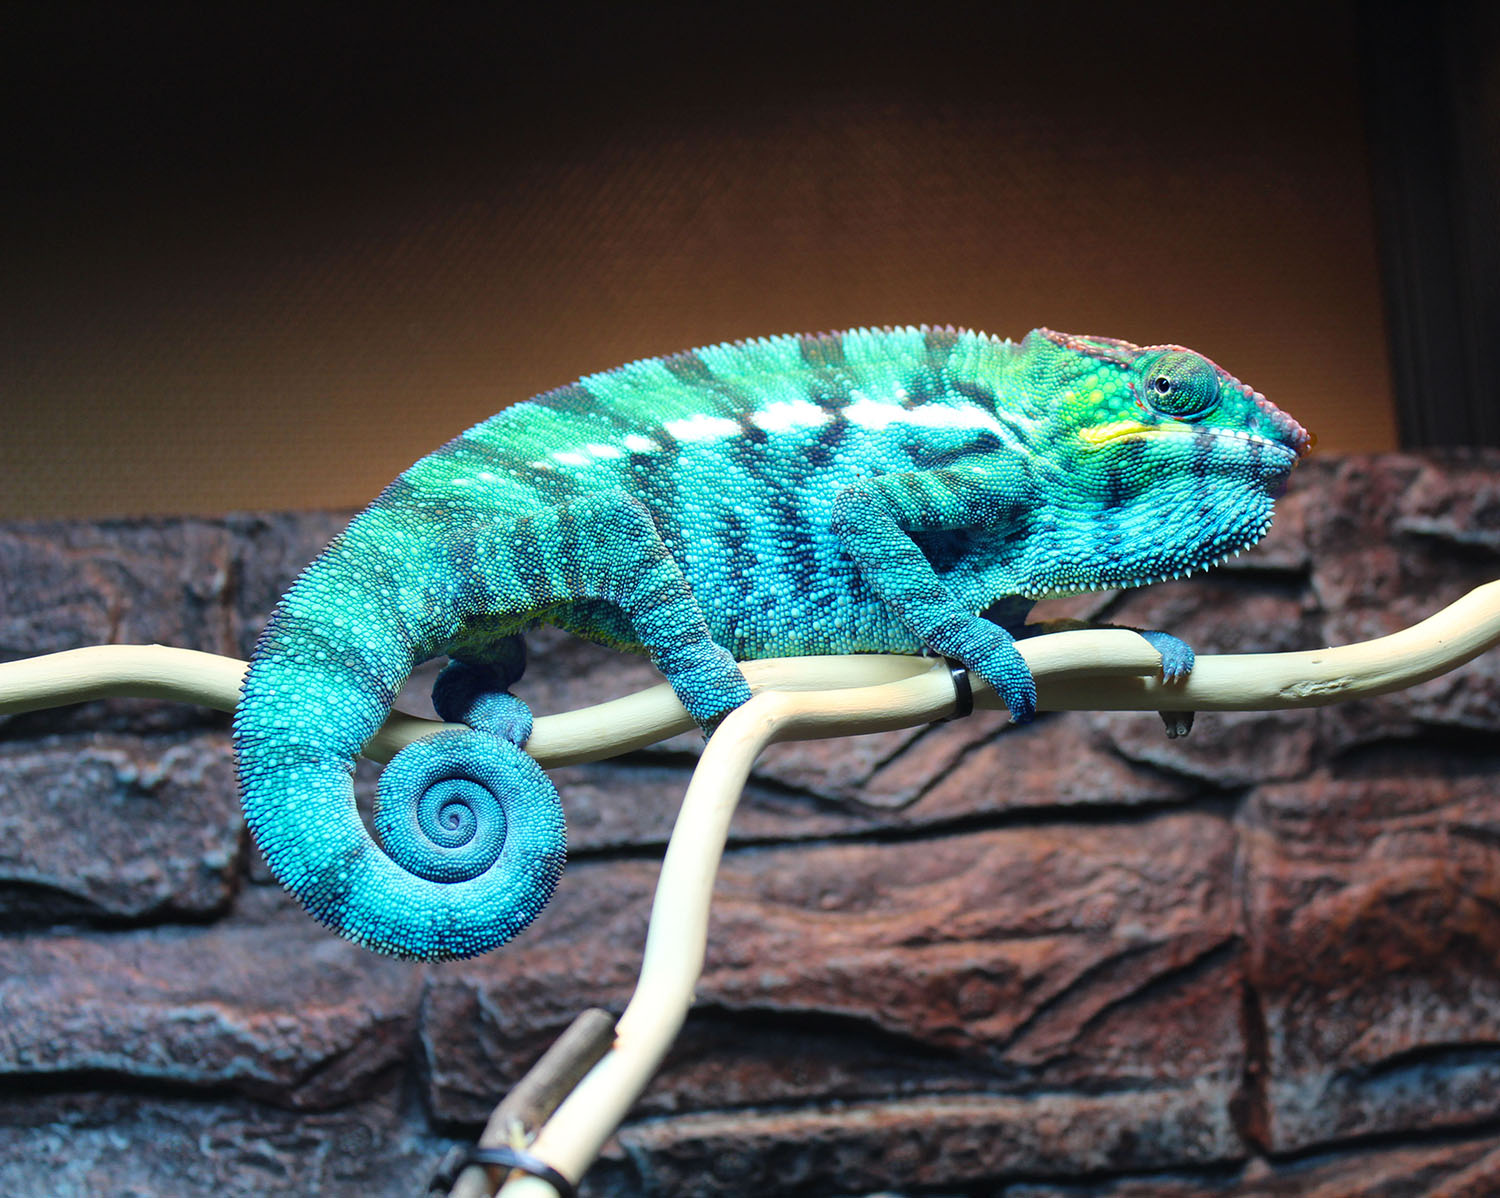 Nosy Be Panther Chameleons For Sale | Chromatic Chameleons